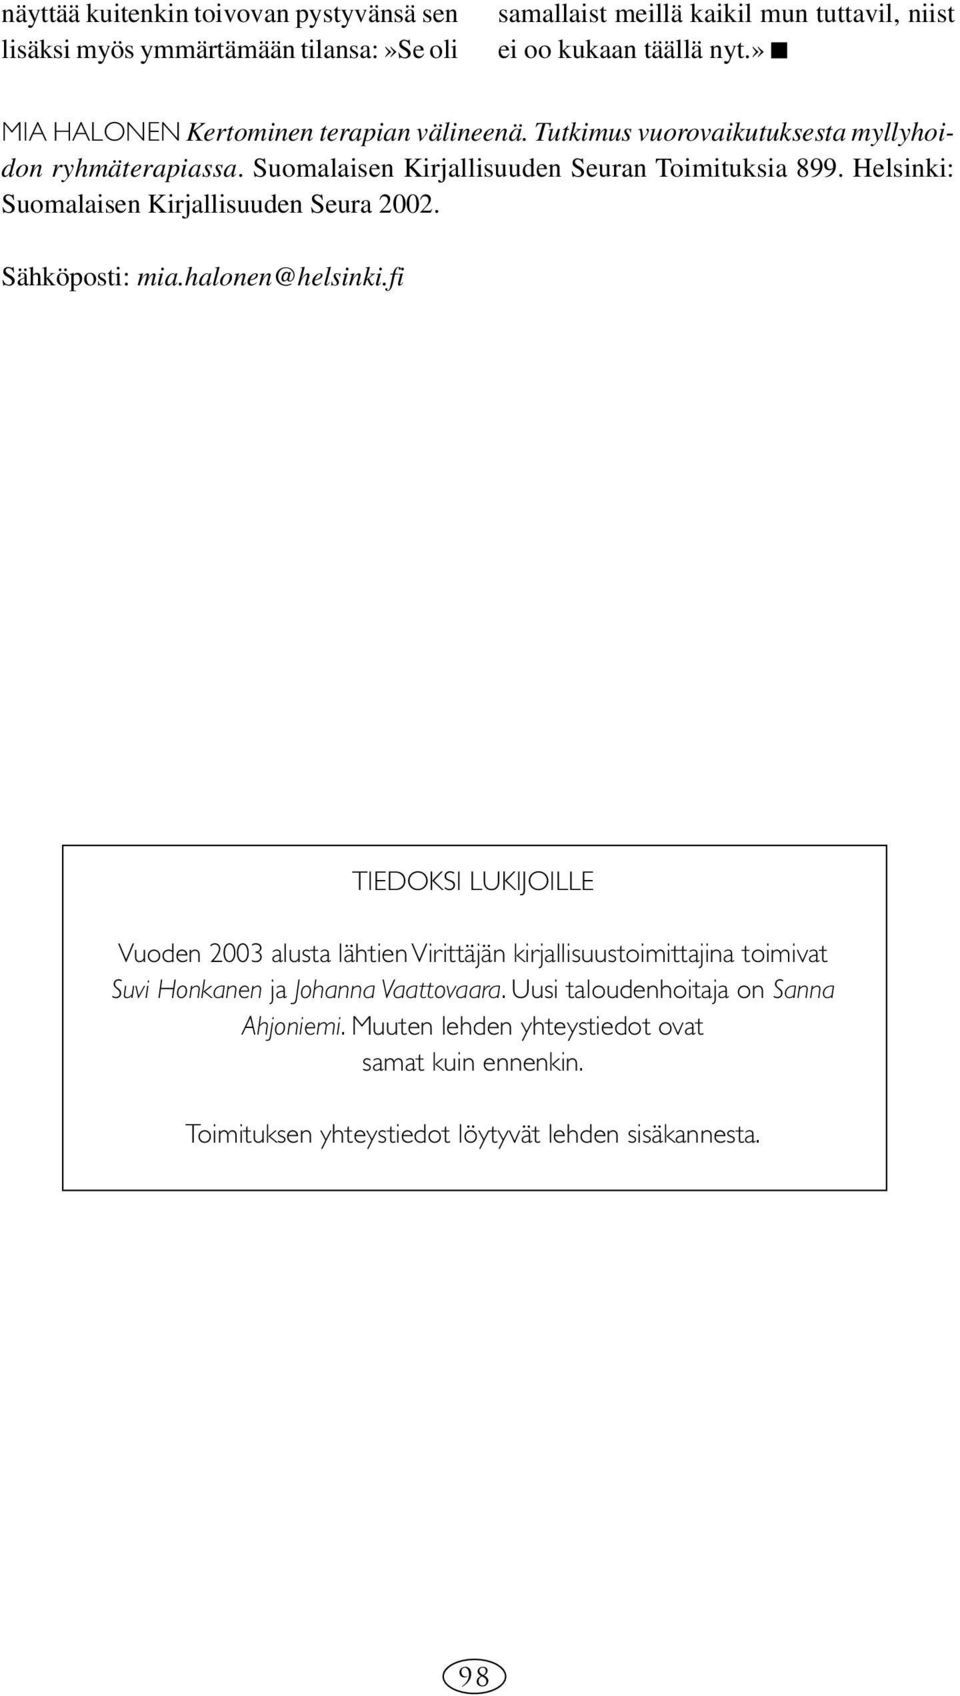 Helsinki: Suomalaisen Kirjallisuuden Seura 2002. Sähköposti: mia.halonen@helsinki.